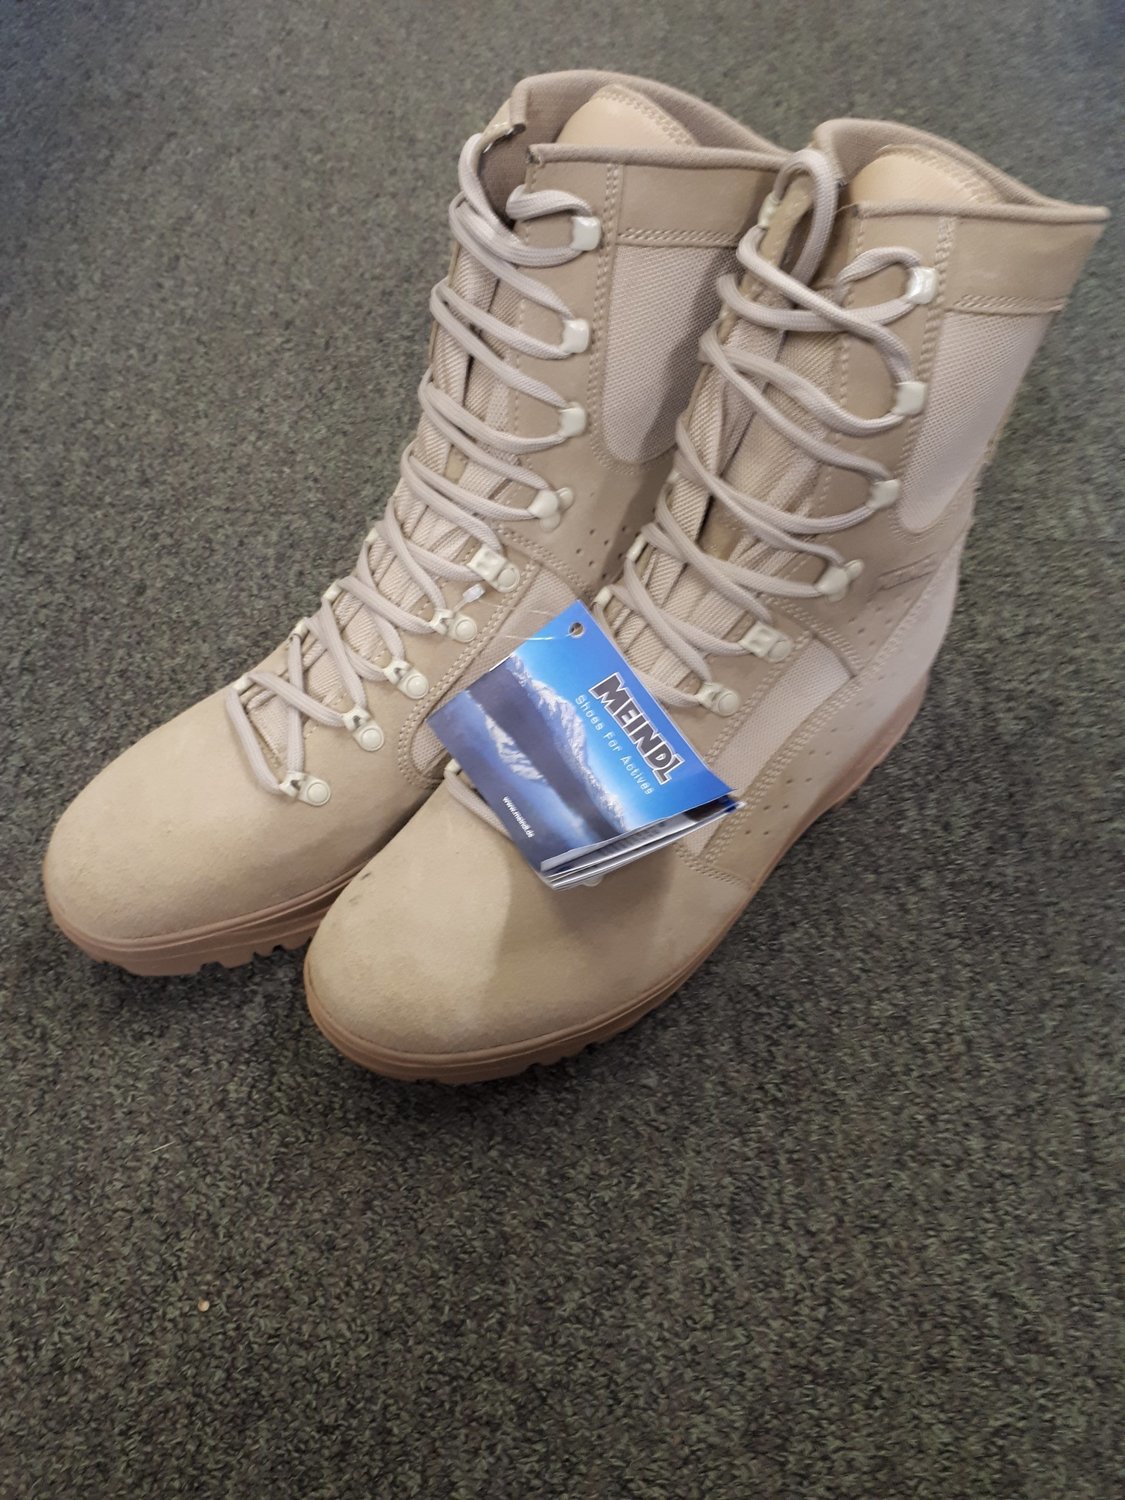 desert boots size 13